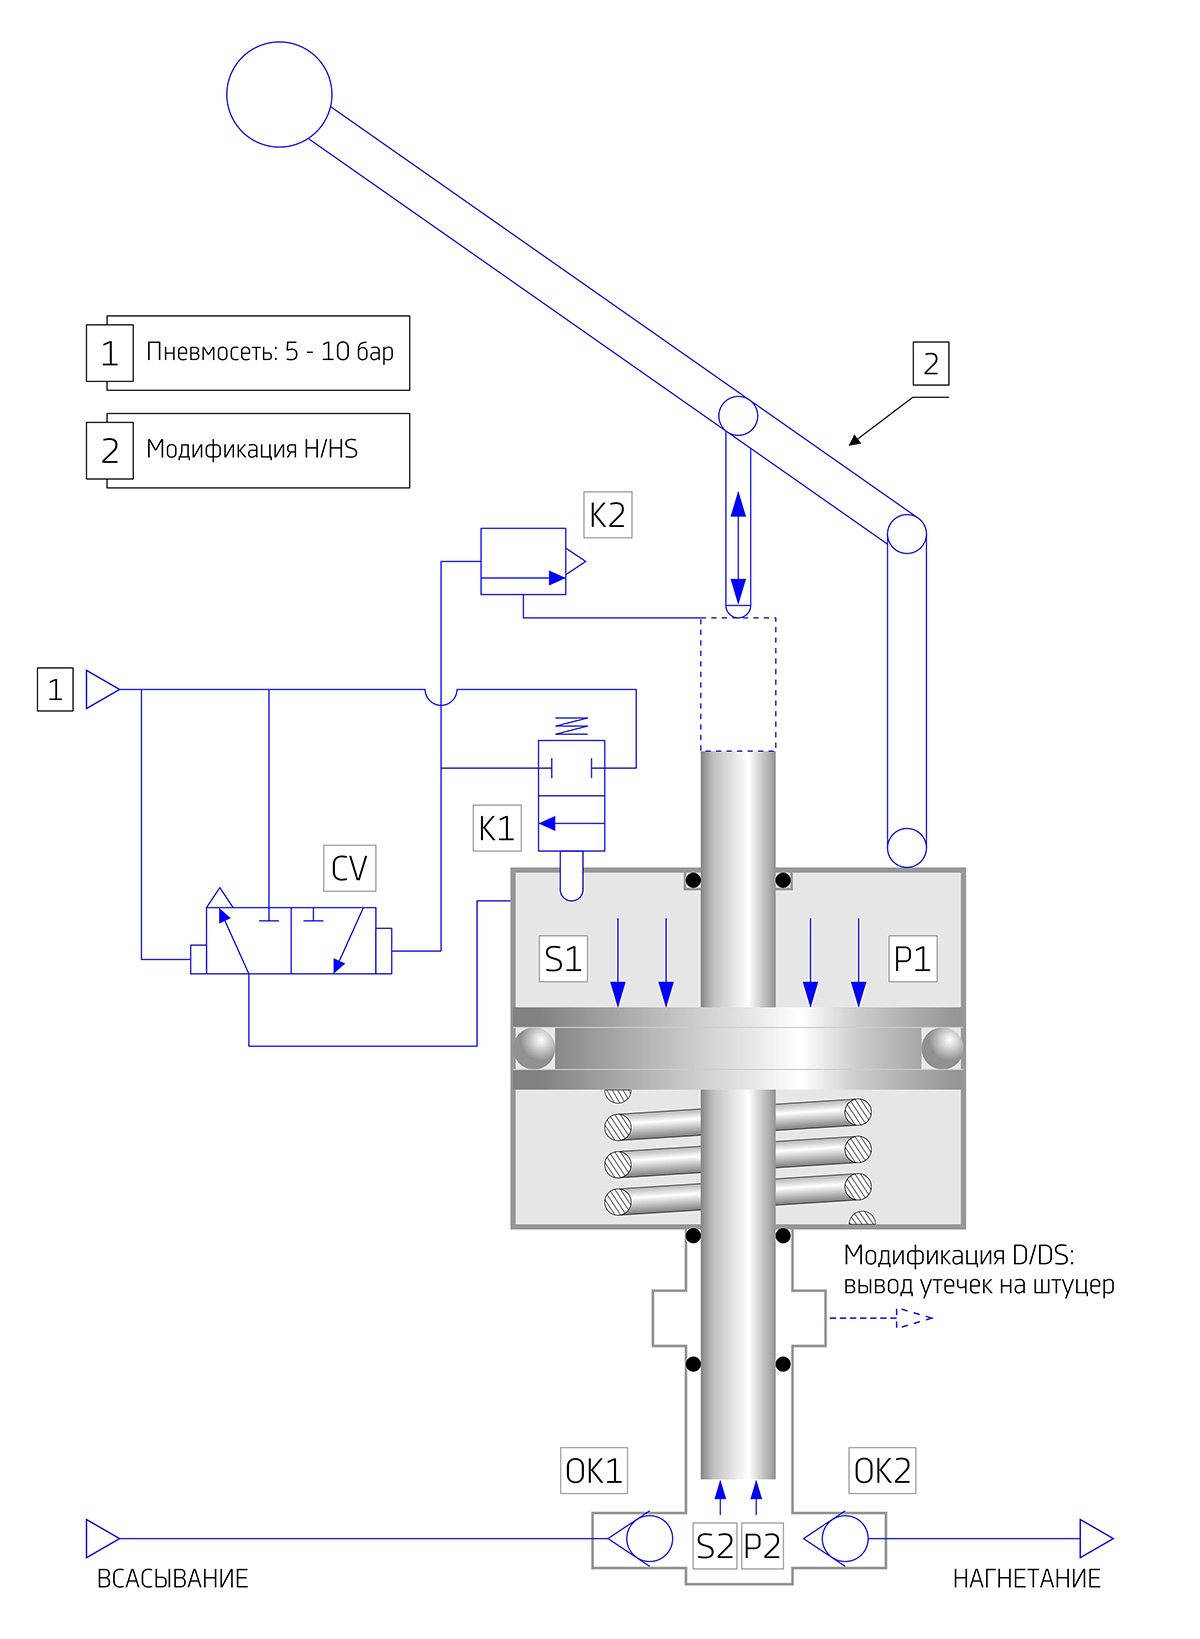 High Pressure Hydraulic Test Pumps: HP pumps for hydraulic testing of pressure equipment and systems